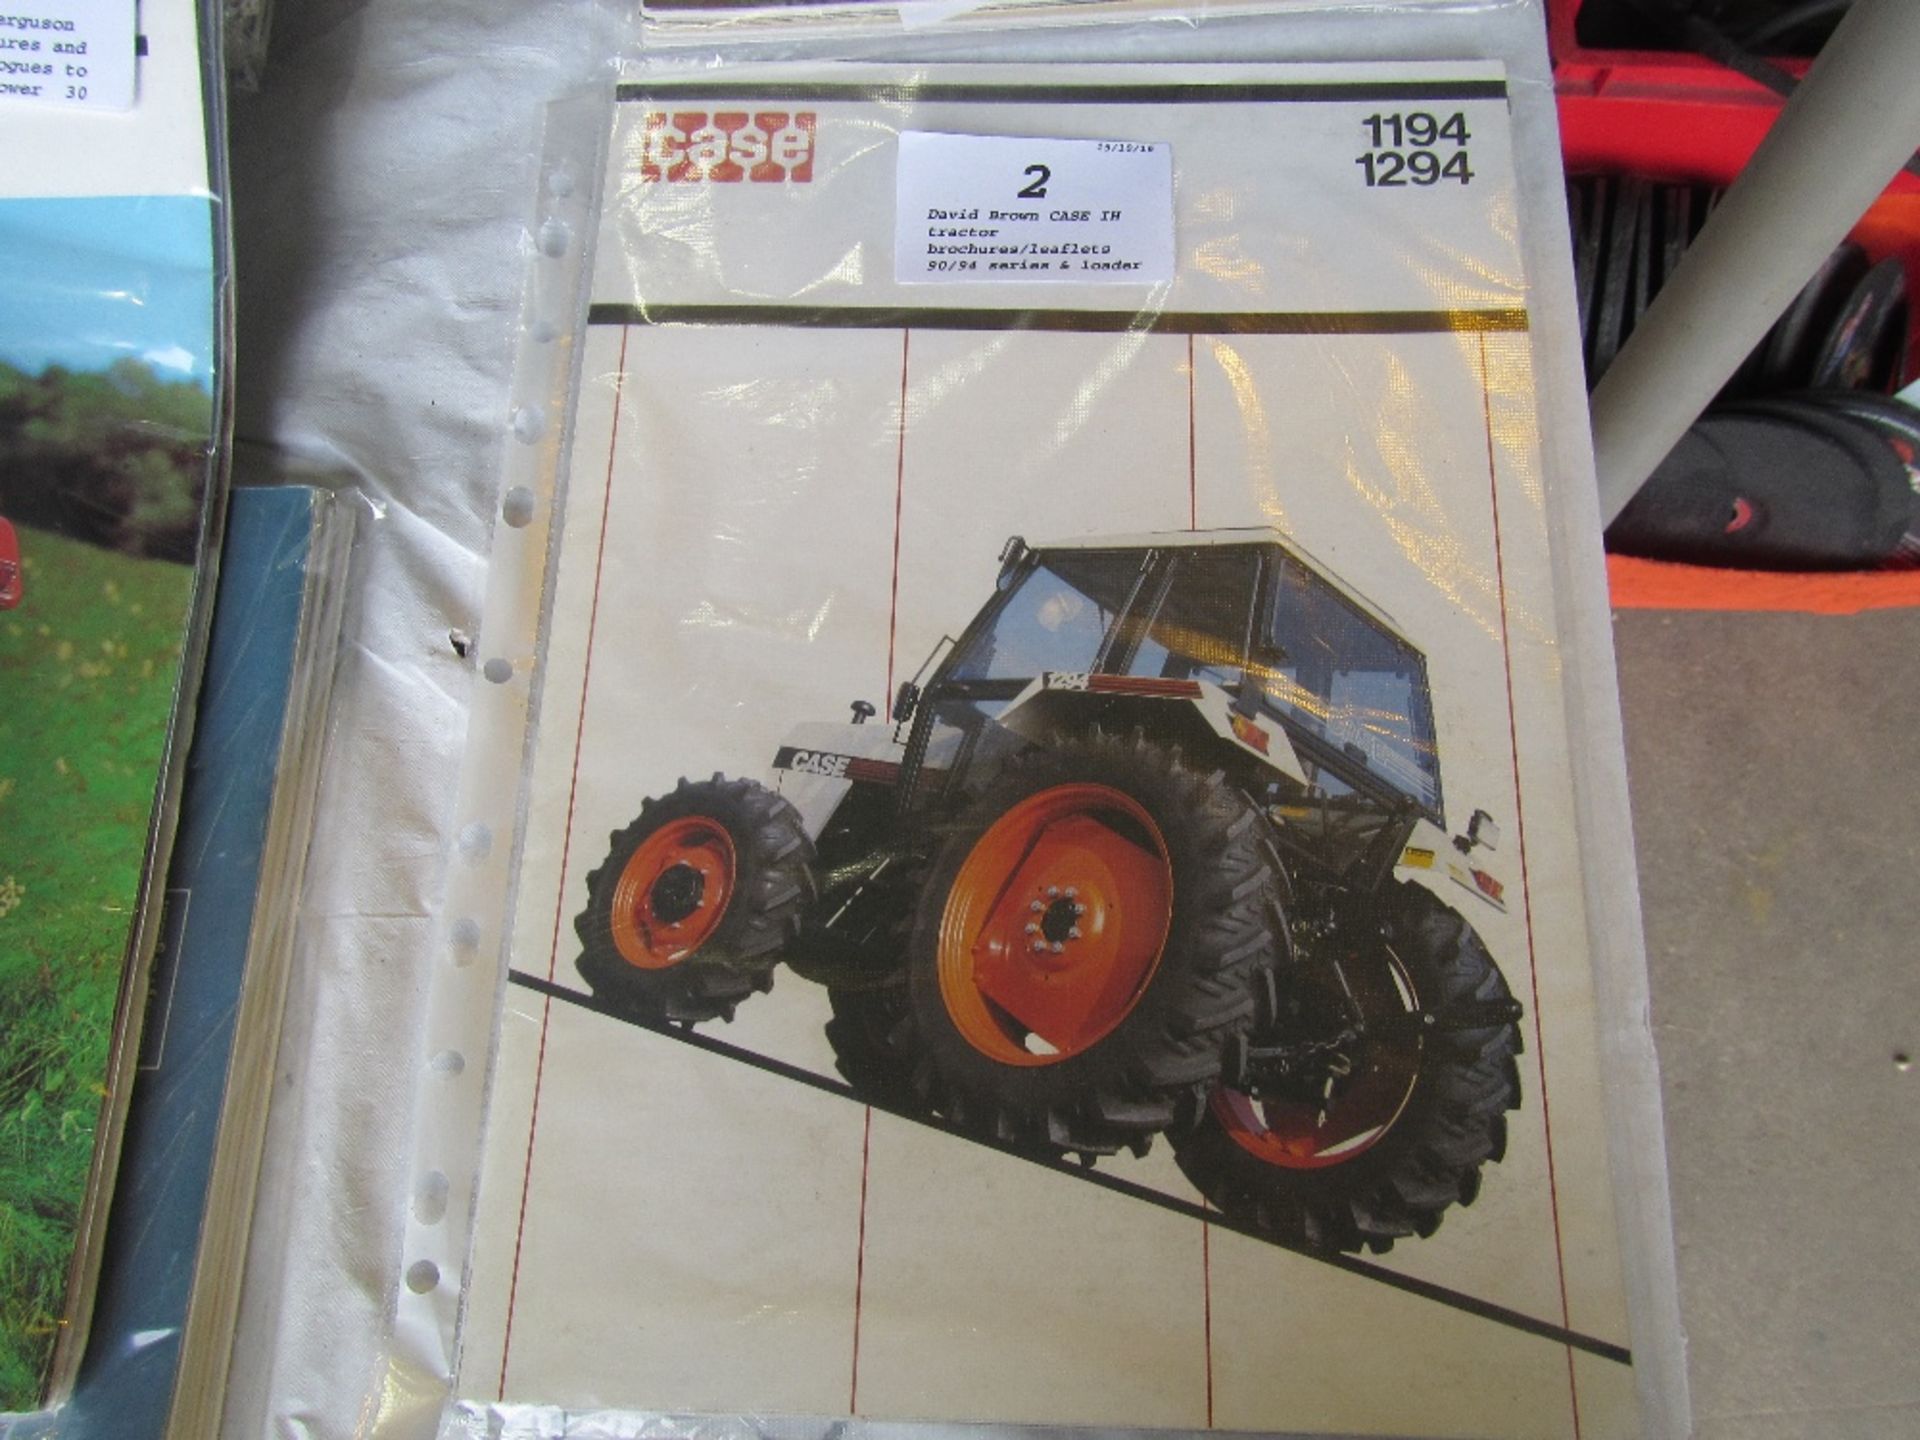 David Brown CASE IH tractor brochures/leaflets 90/94 series & loader